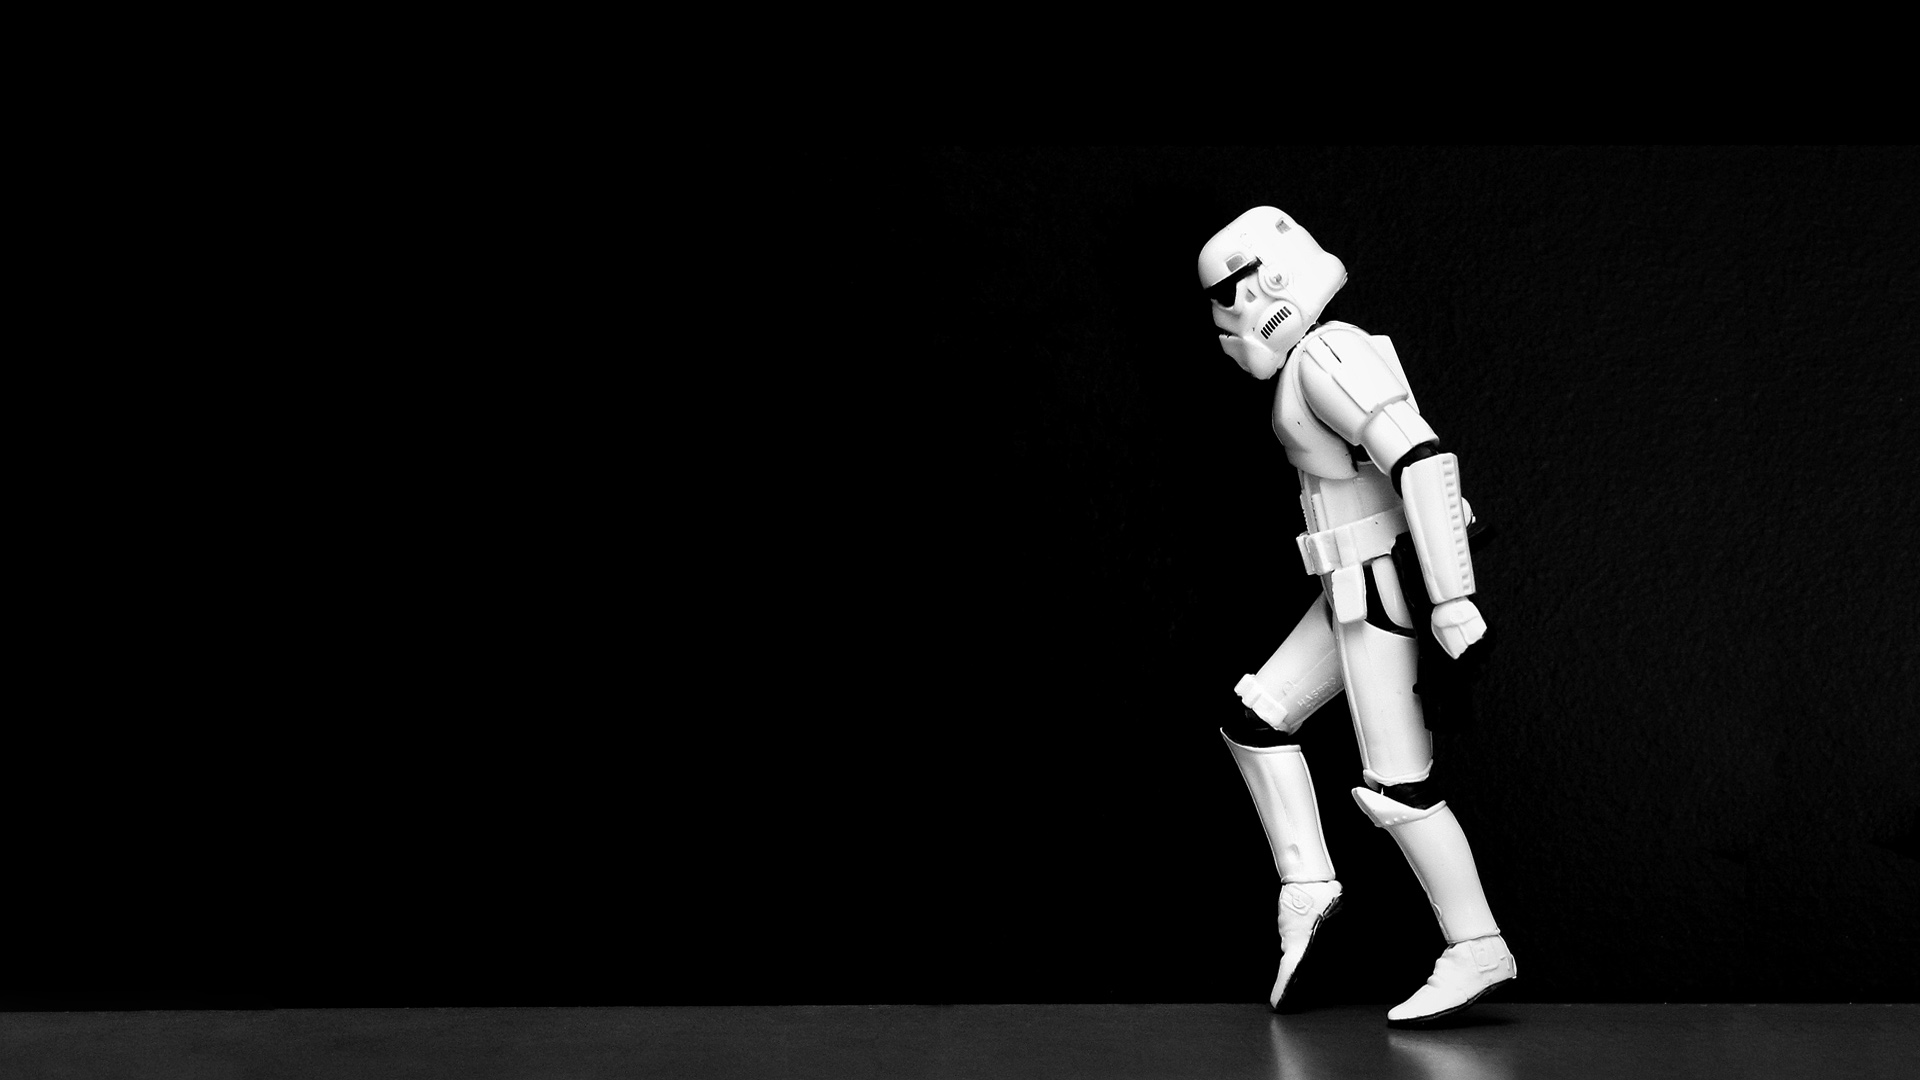 Star wars stormtroopers moonwalk black background stormtrooper #QRGV